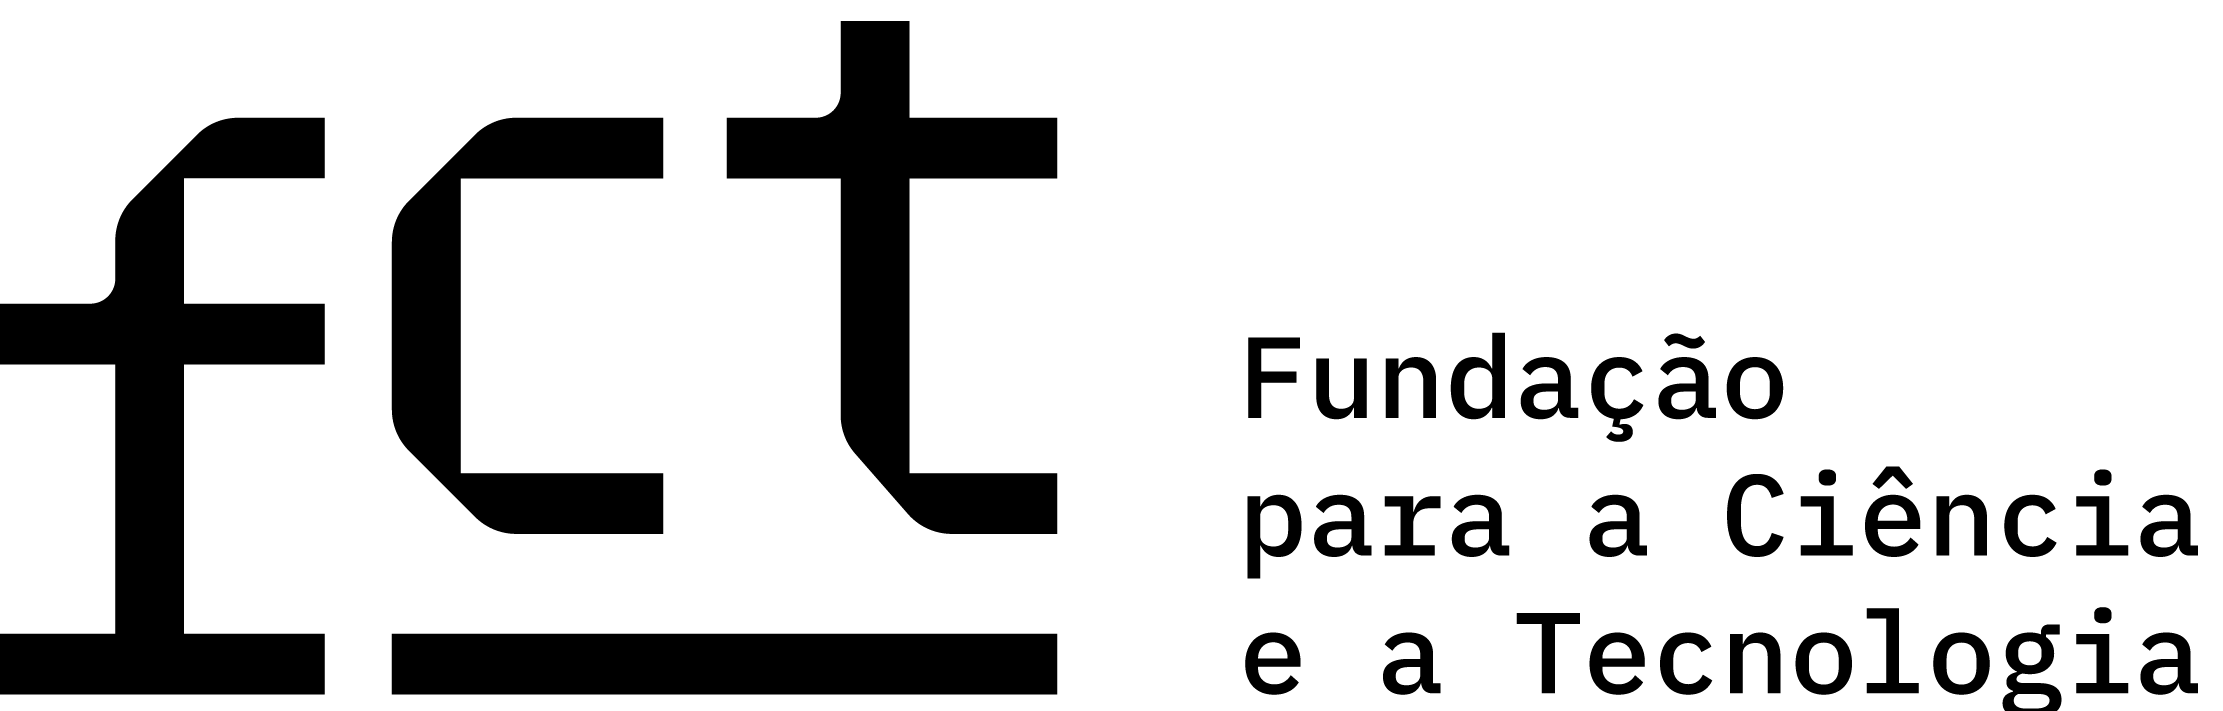 INCM - Imprensa Nacional Casa da Moeda Logotipo